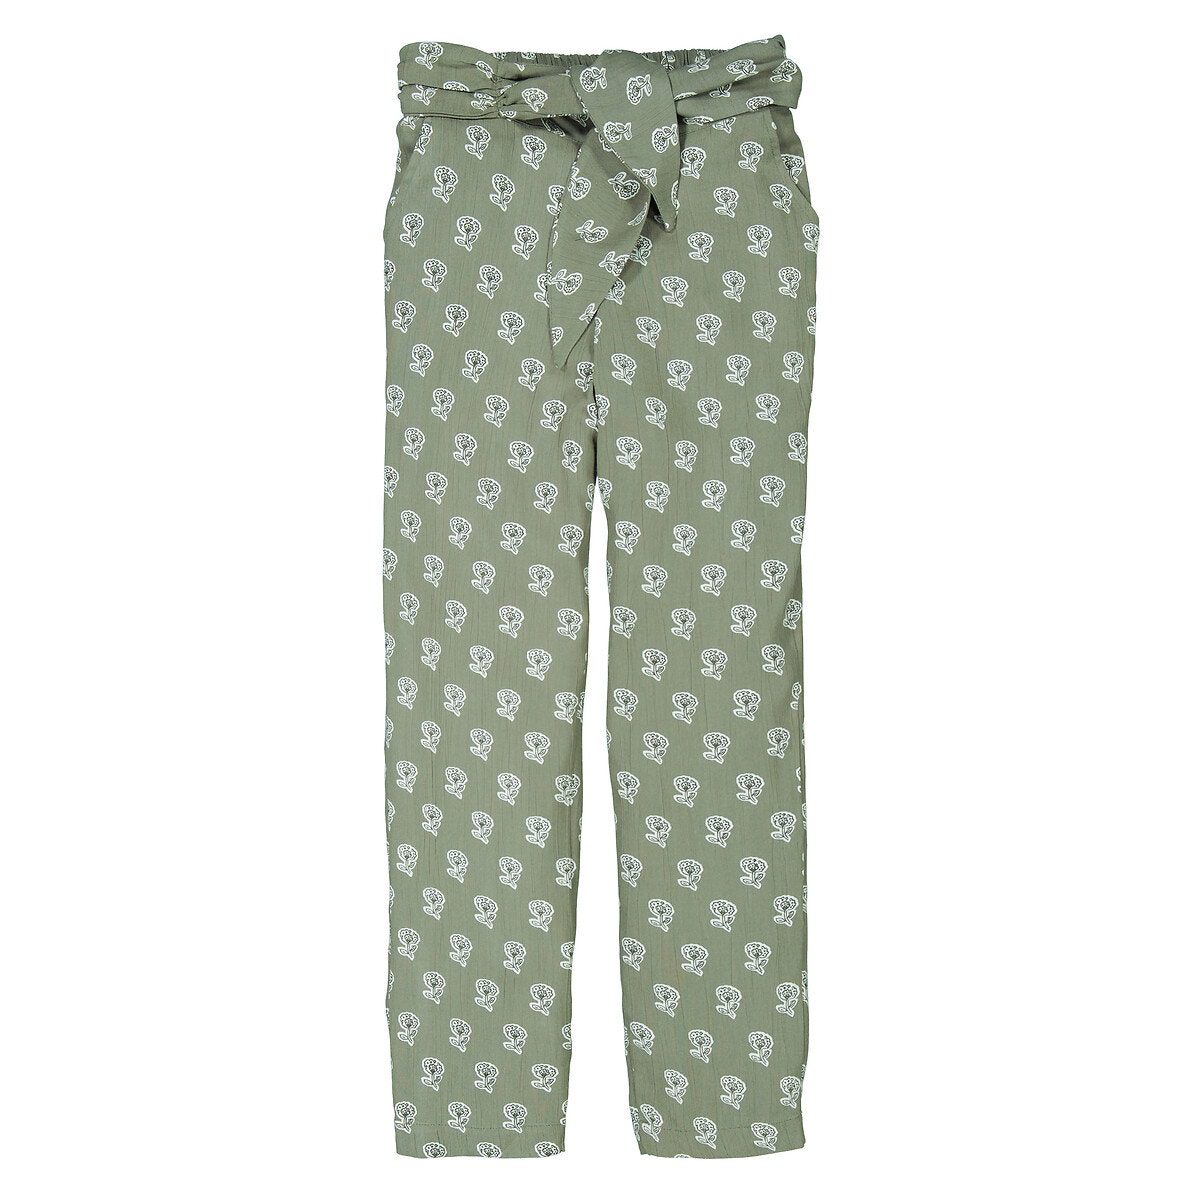 Ίσιο παντελόνι με χυτή εφαρμογή και φλοράλ μοτίβο Πρασινο